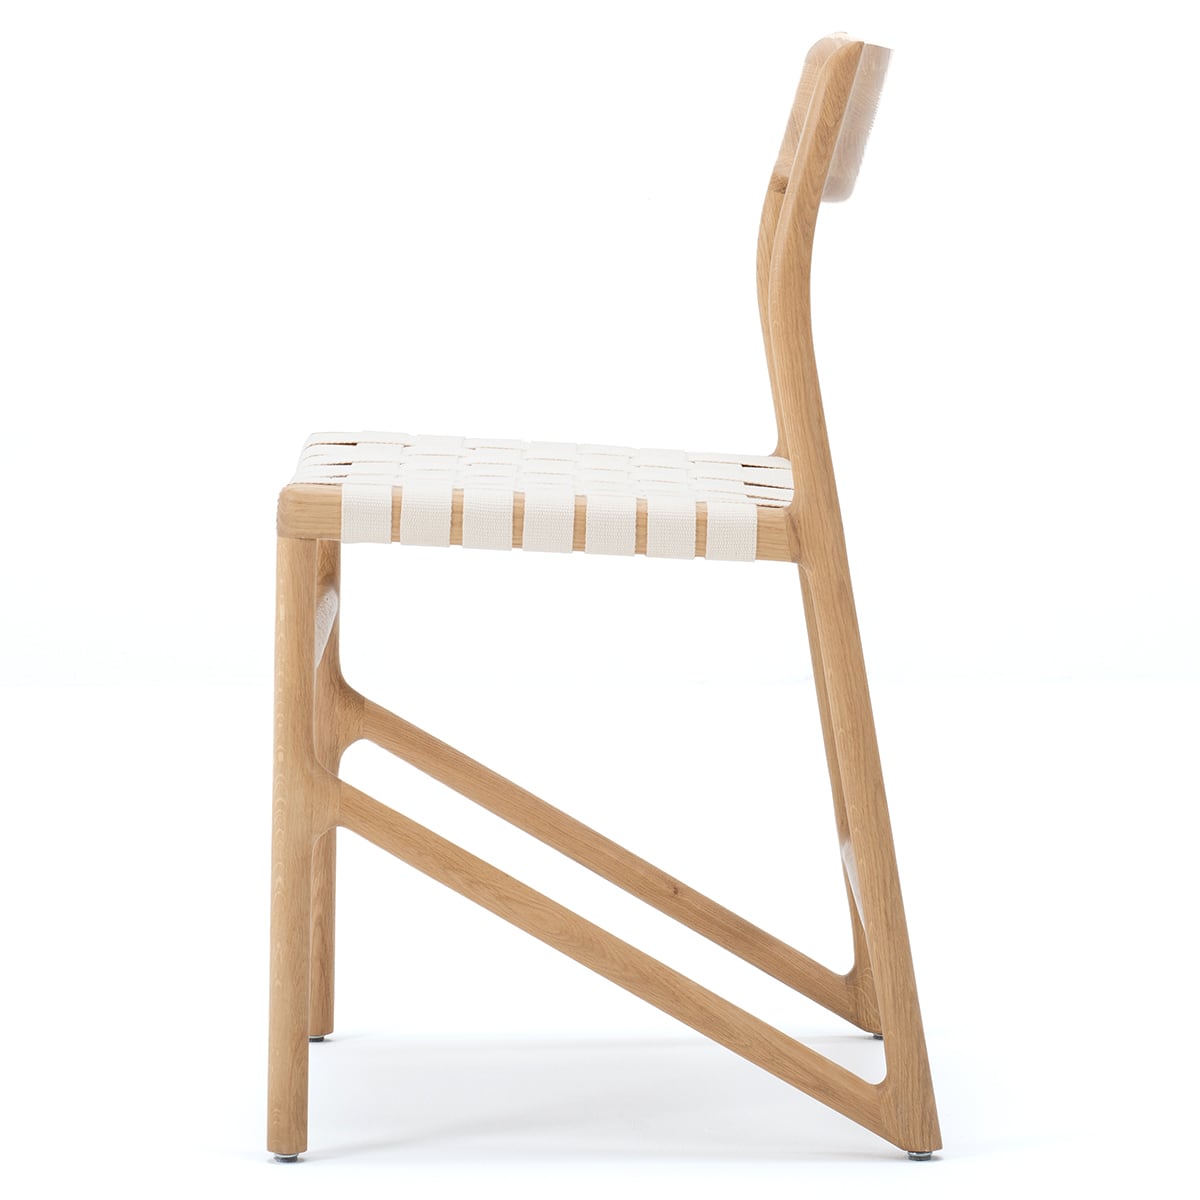 FAWN - כיסא - אלון מלא, גימור משומן טבעי, כותנה לבנה